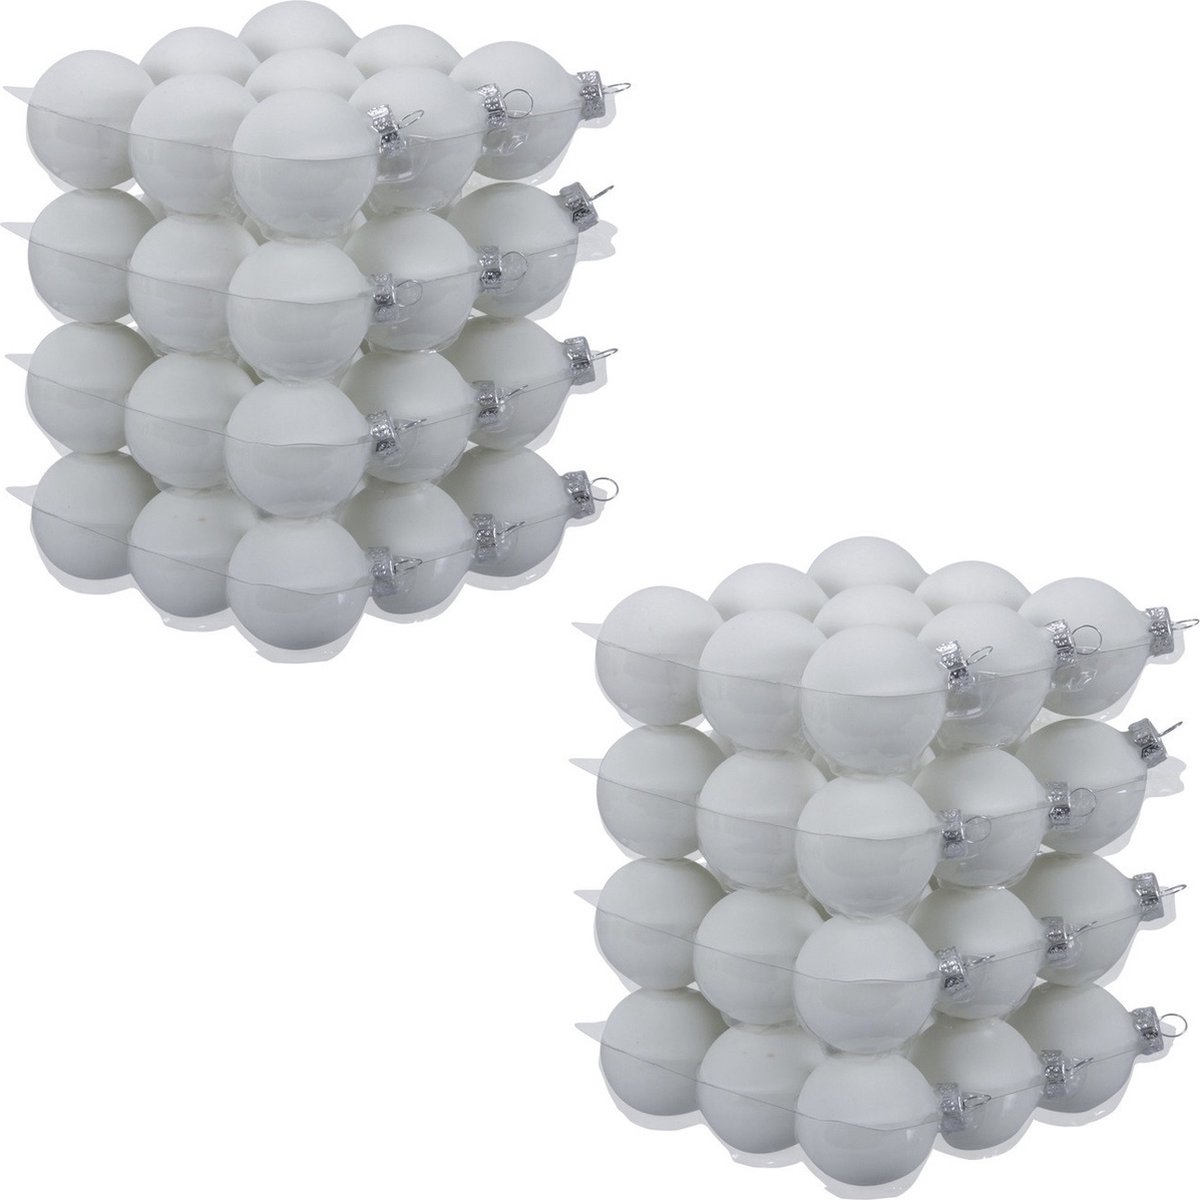 72x Satijn witte glazen kerstballen 4 cm - mat - Kerstboomversiering wit